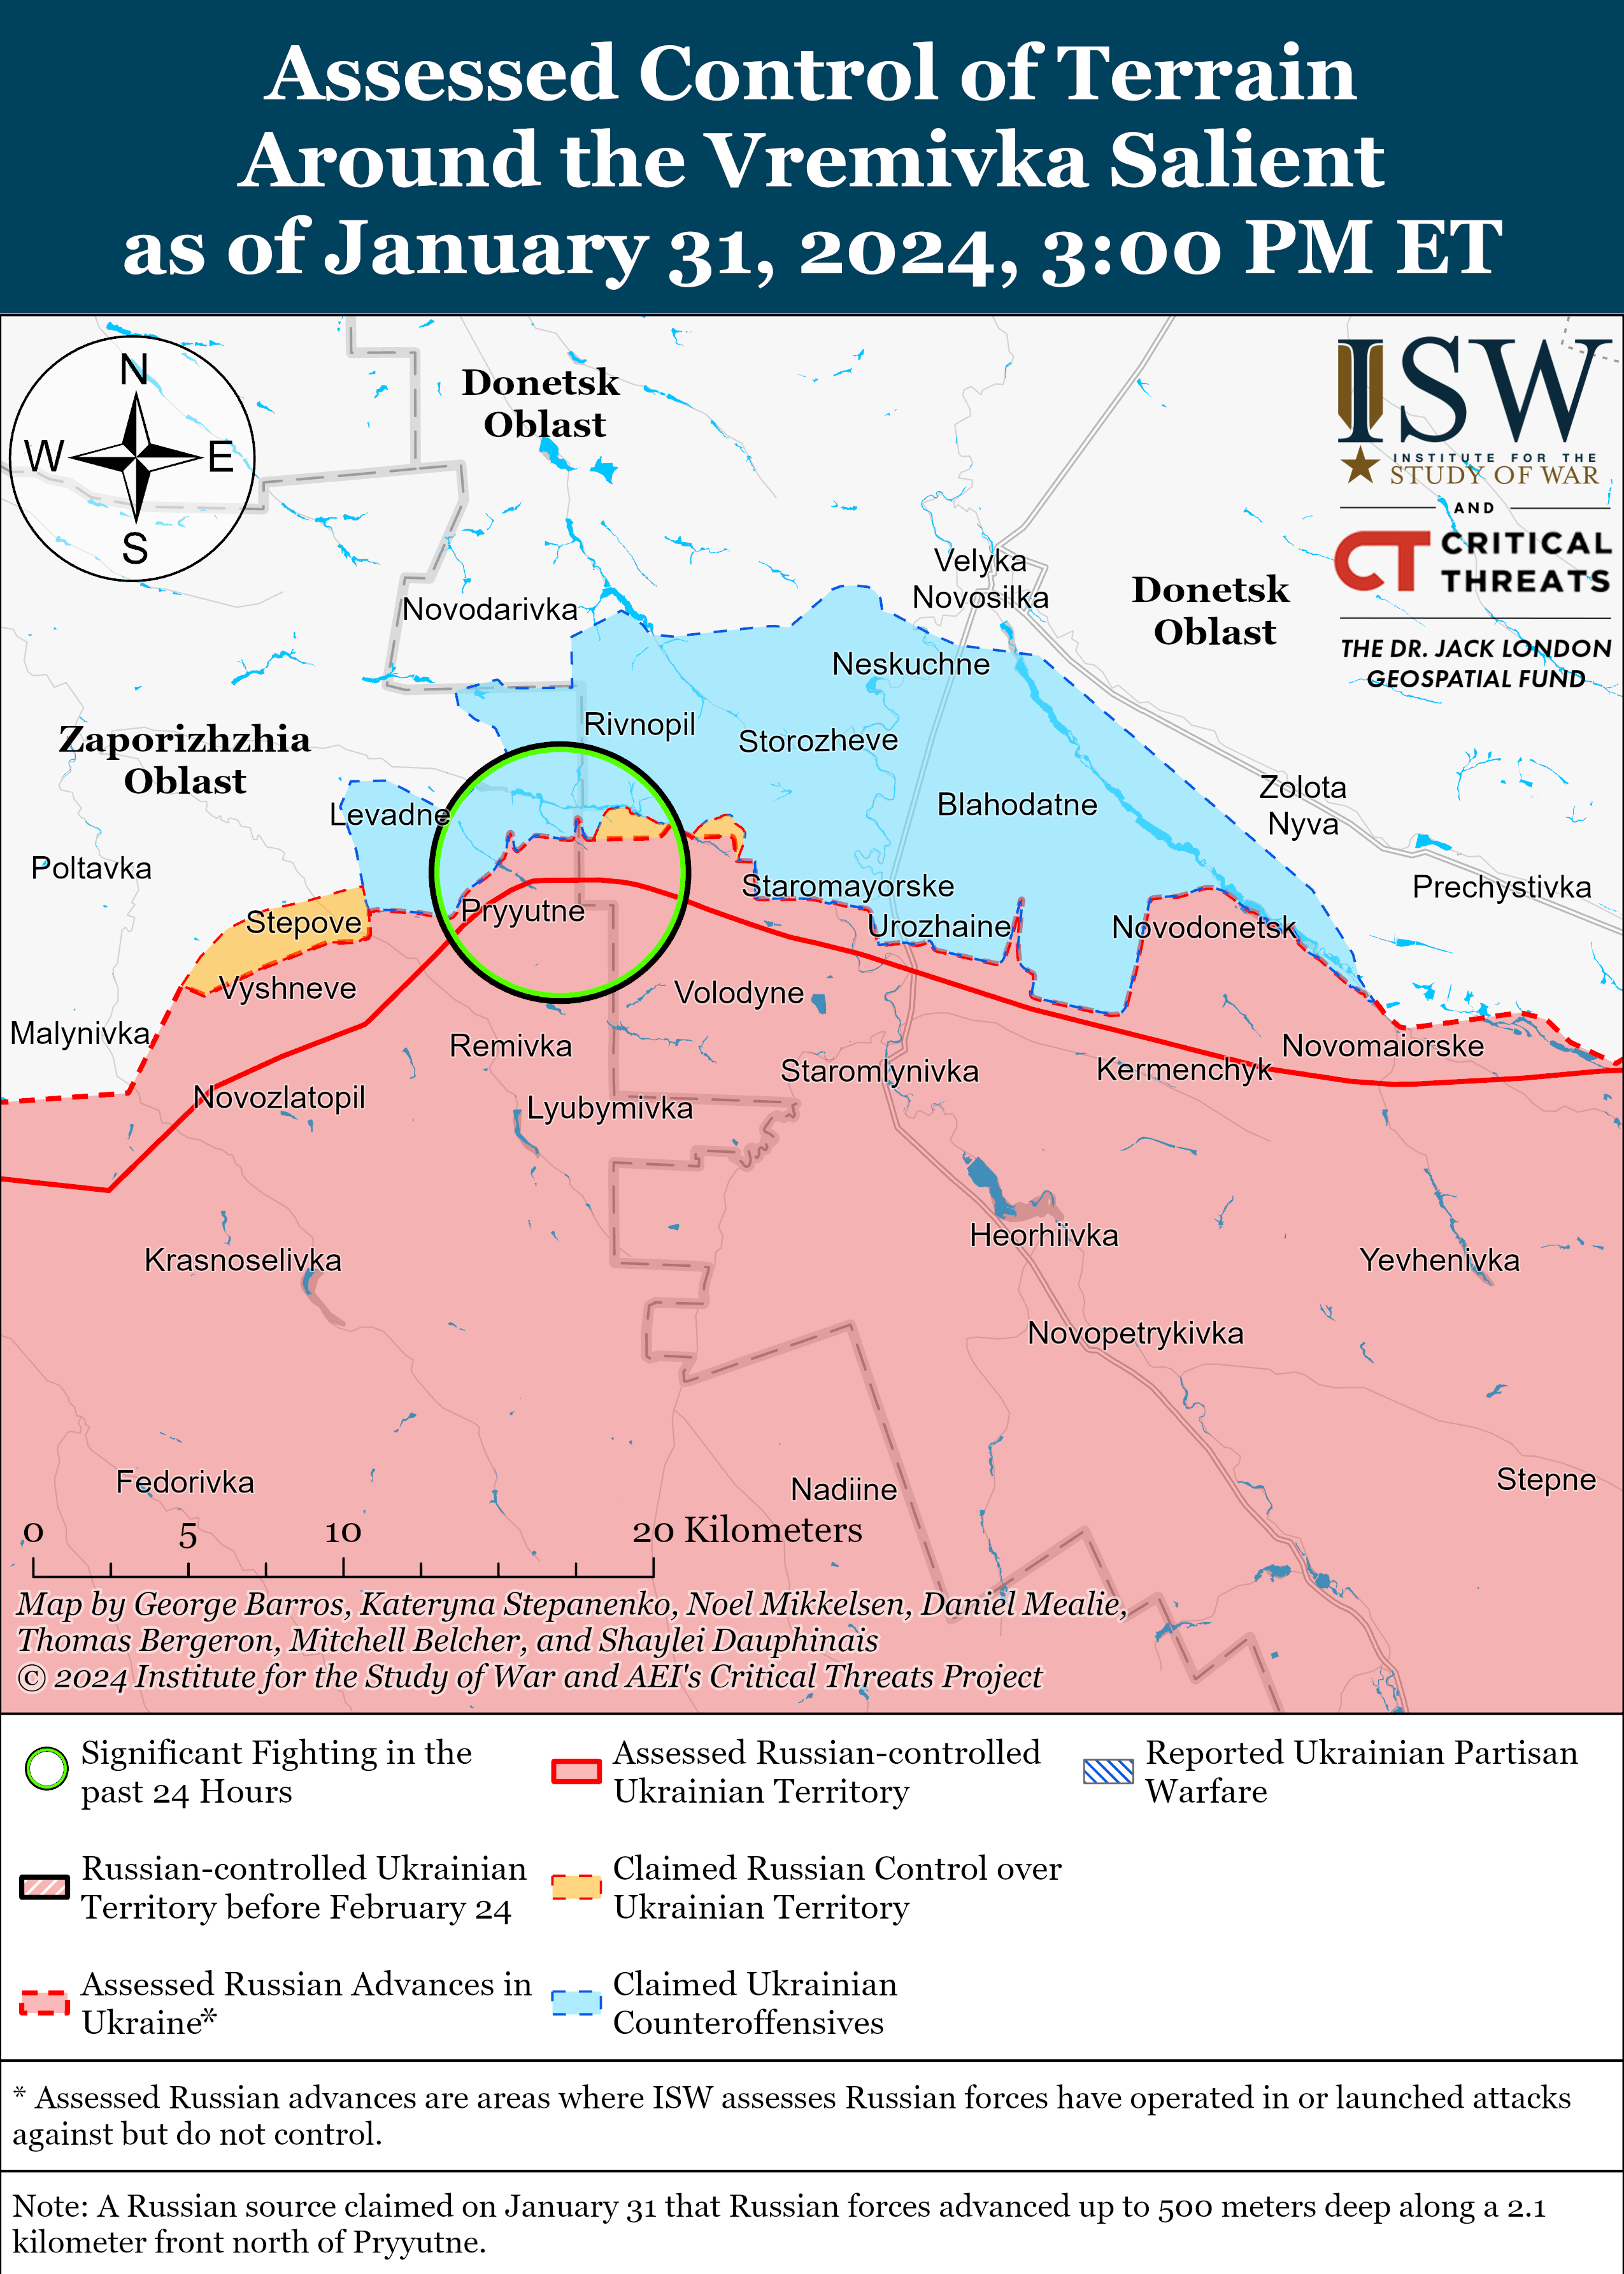 ВСУ ведут позиционные бои к юго-западу от Донецка: карты ISW